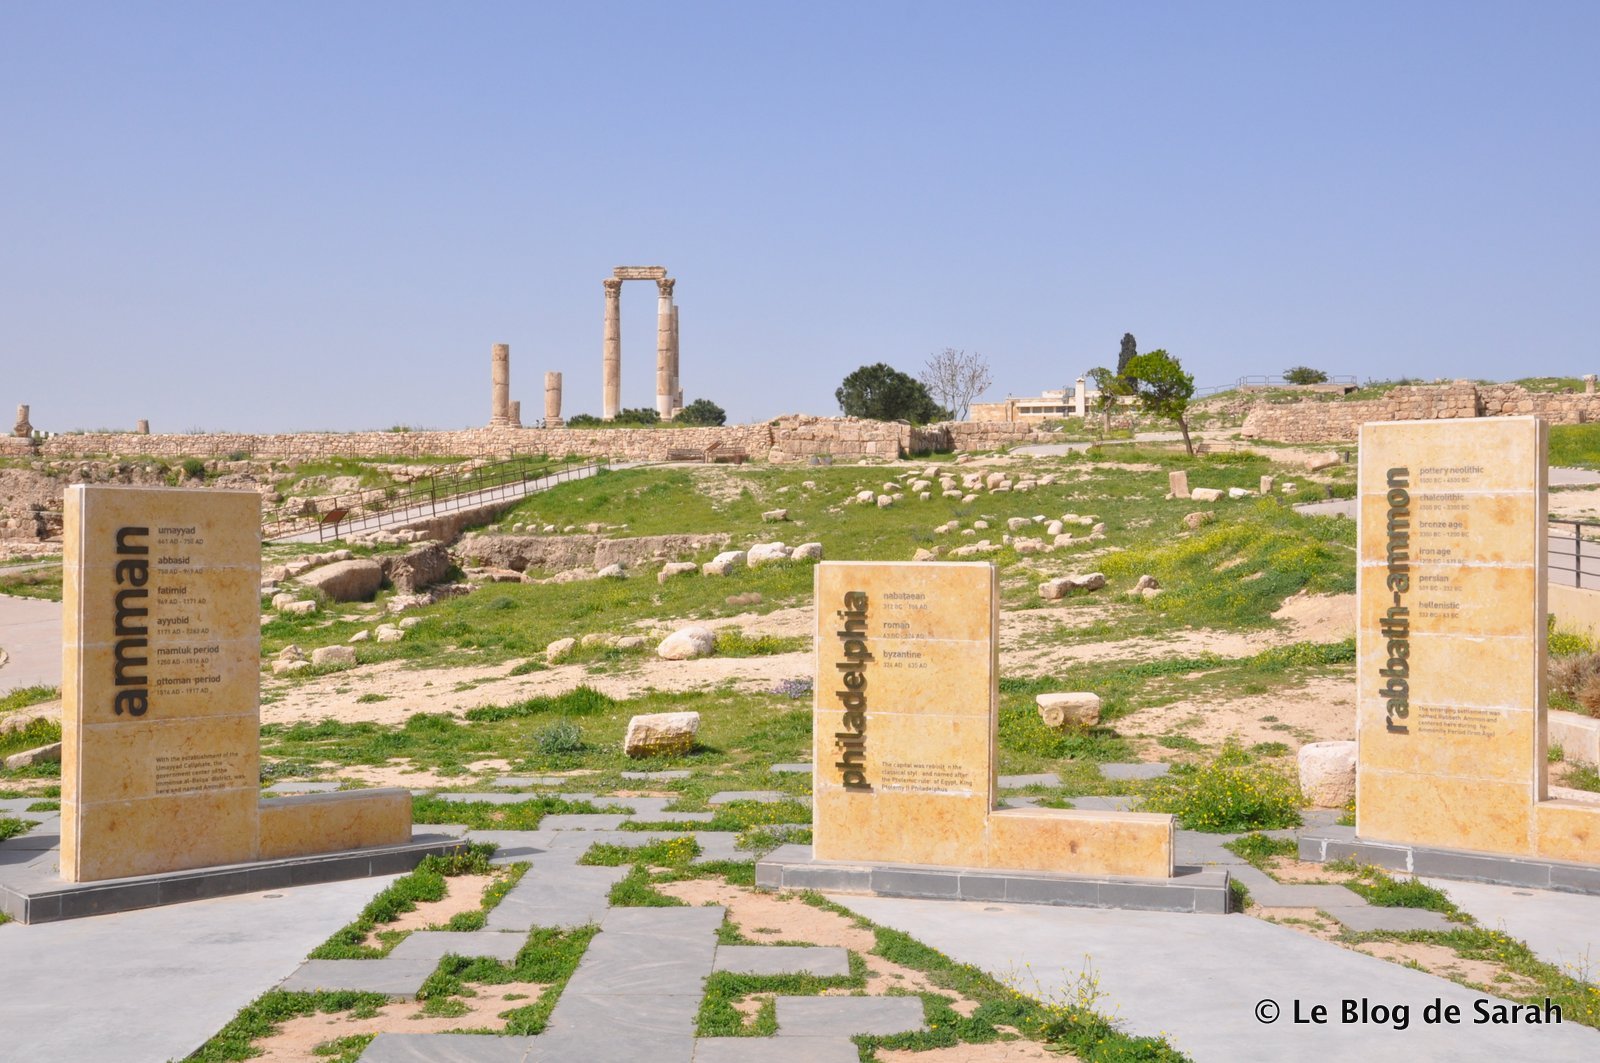 La ciudadela de Amman, con los tres nombres que la ciudad ha llevado, Rhabbat Ammon y Philadelphia